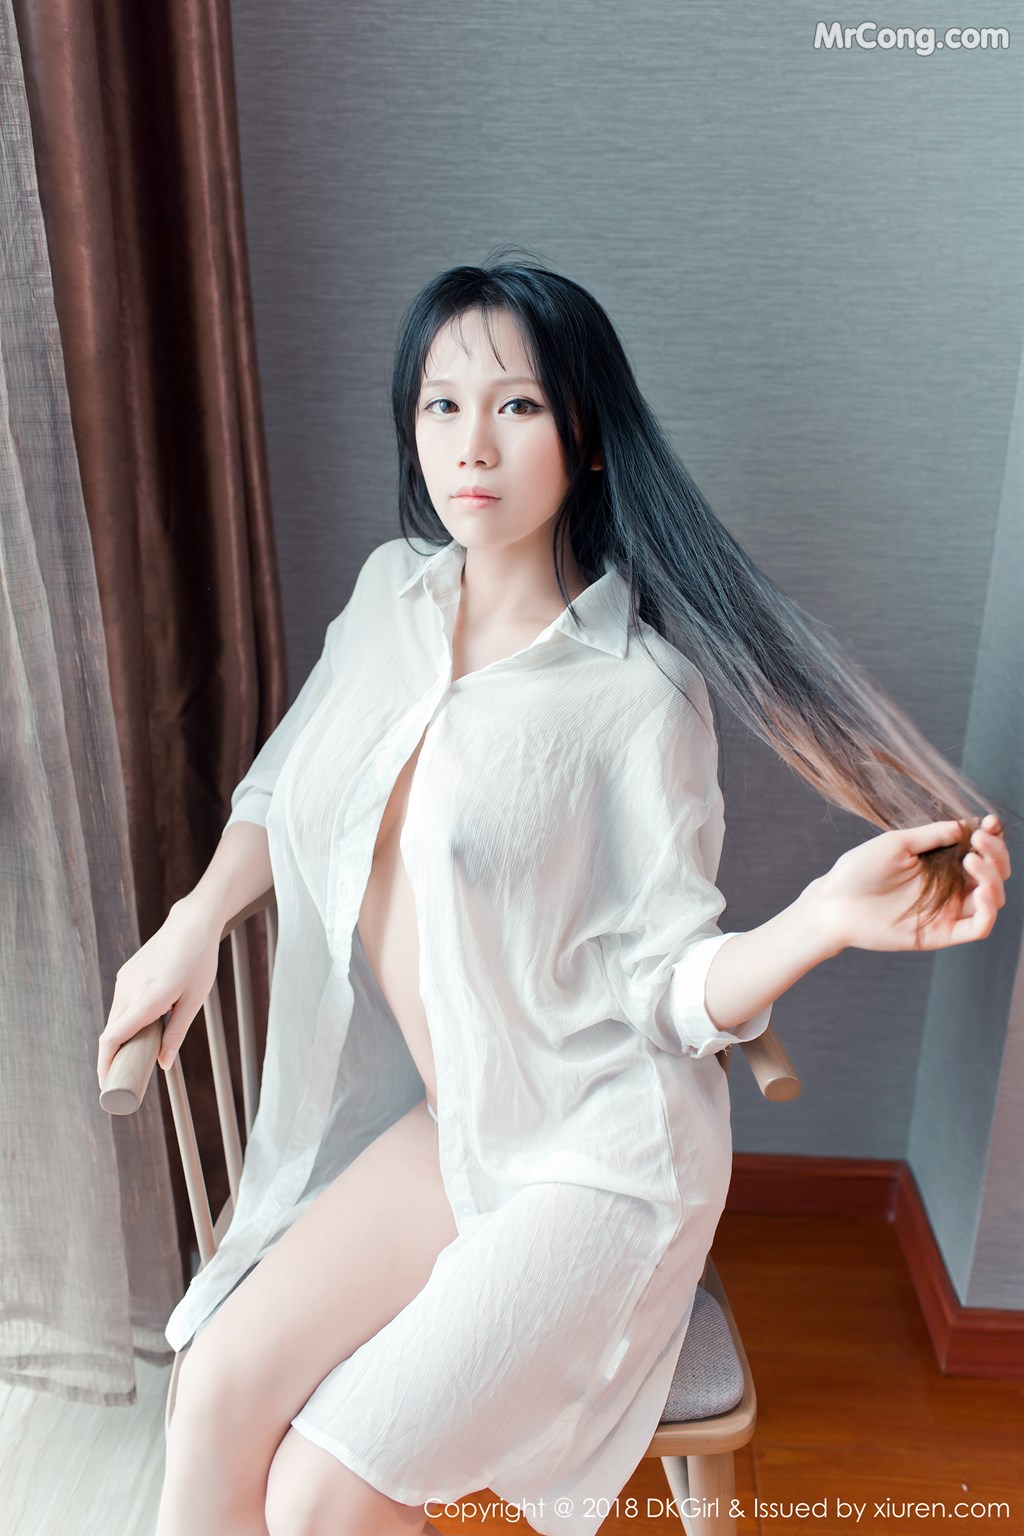 DKGirl Vol.070: Model Li Ke Ke (李 可可) (49 photos) photo 1-3